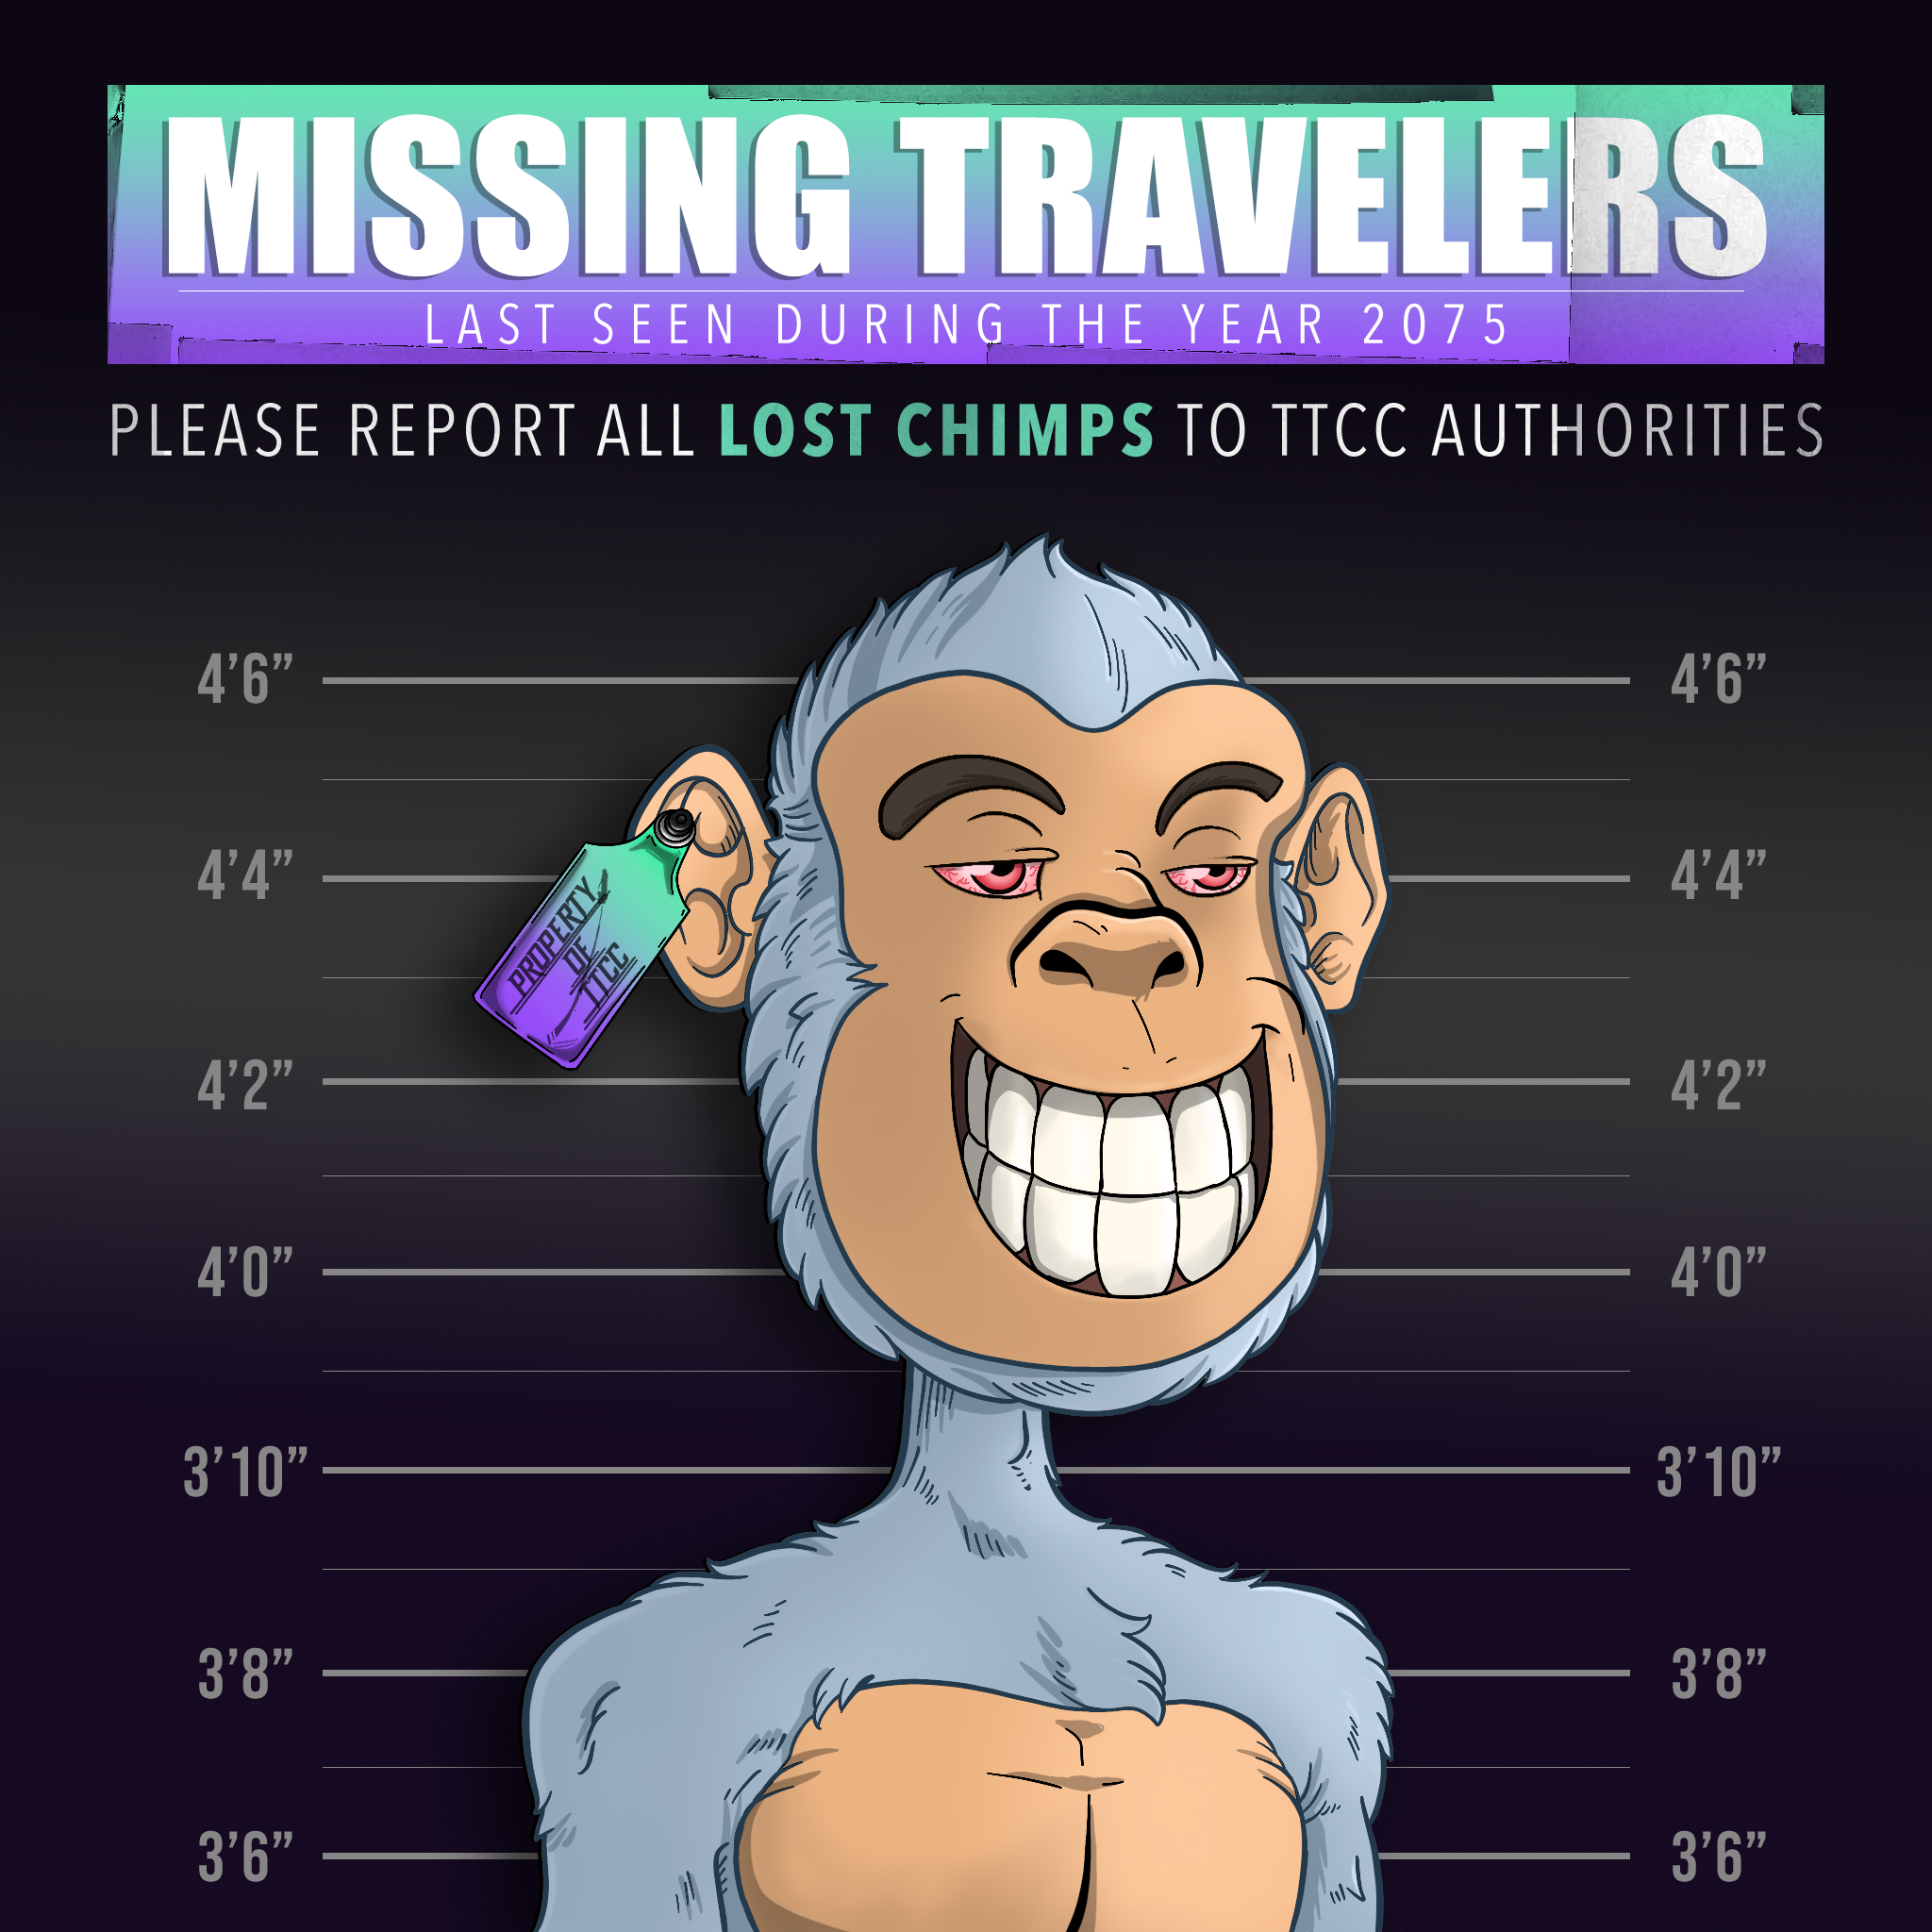 Lost Chimps #3457